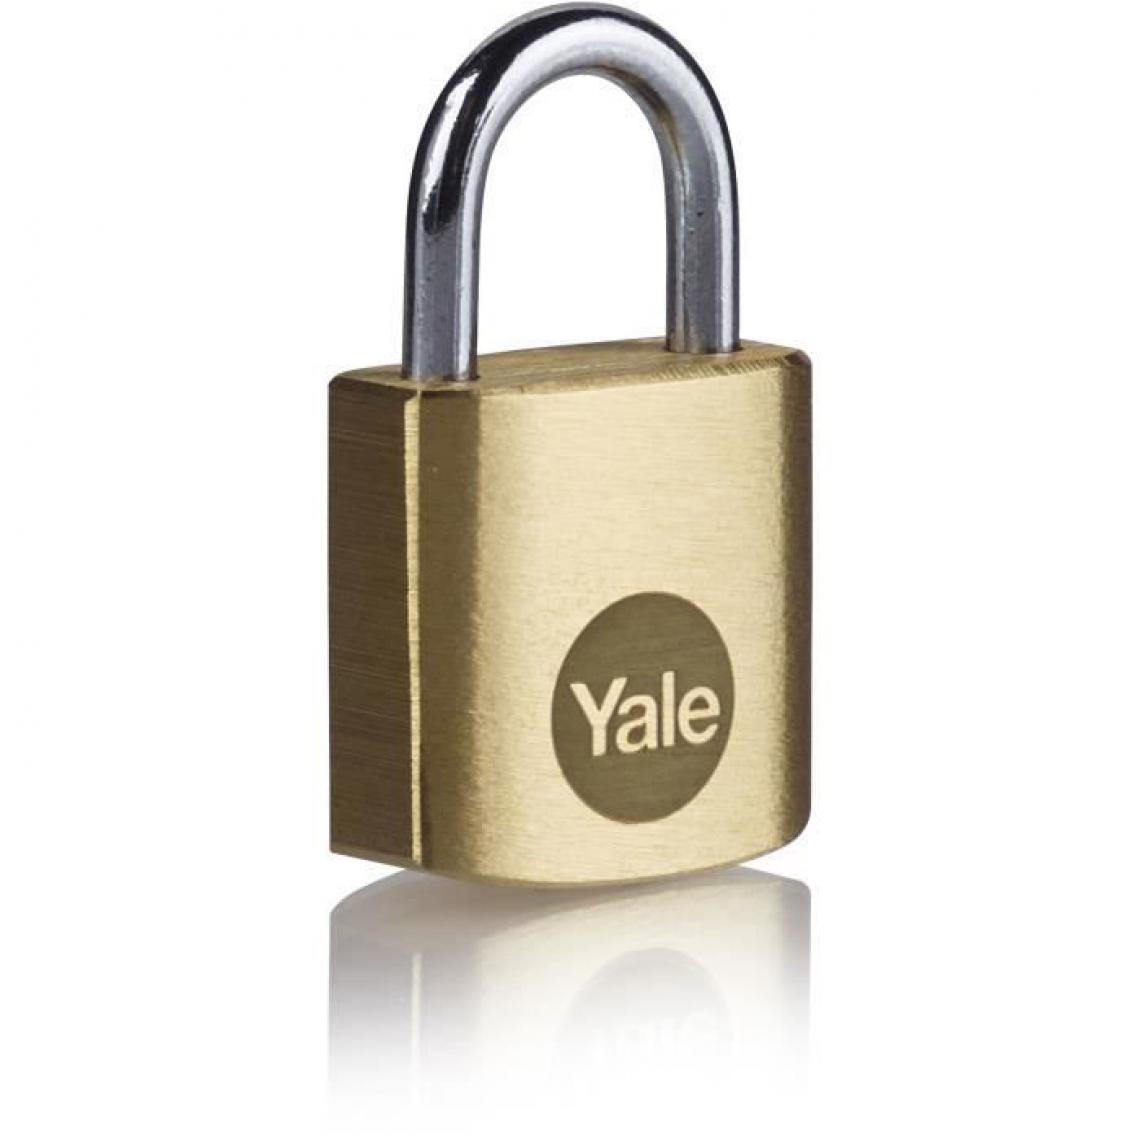 Yale - YALE Lot de 2 cadenas laiton s'entrouvrant 20 mm, anse acier, 3 cles - Verrou, cadenas, targette